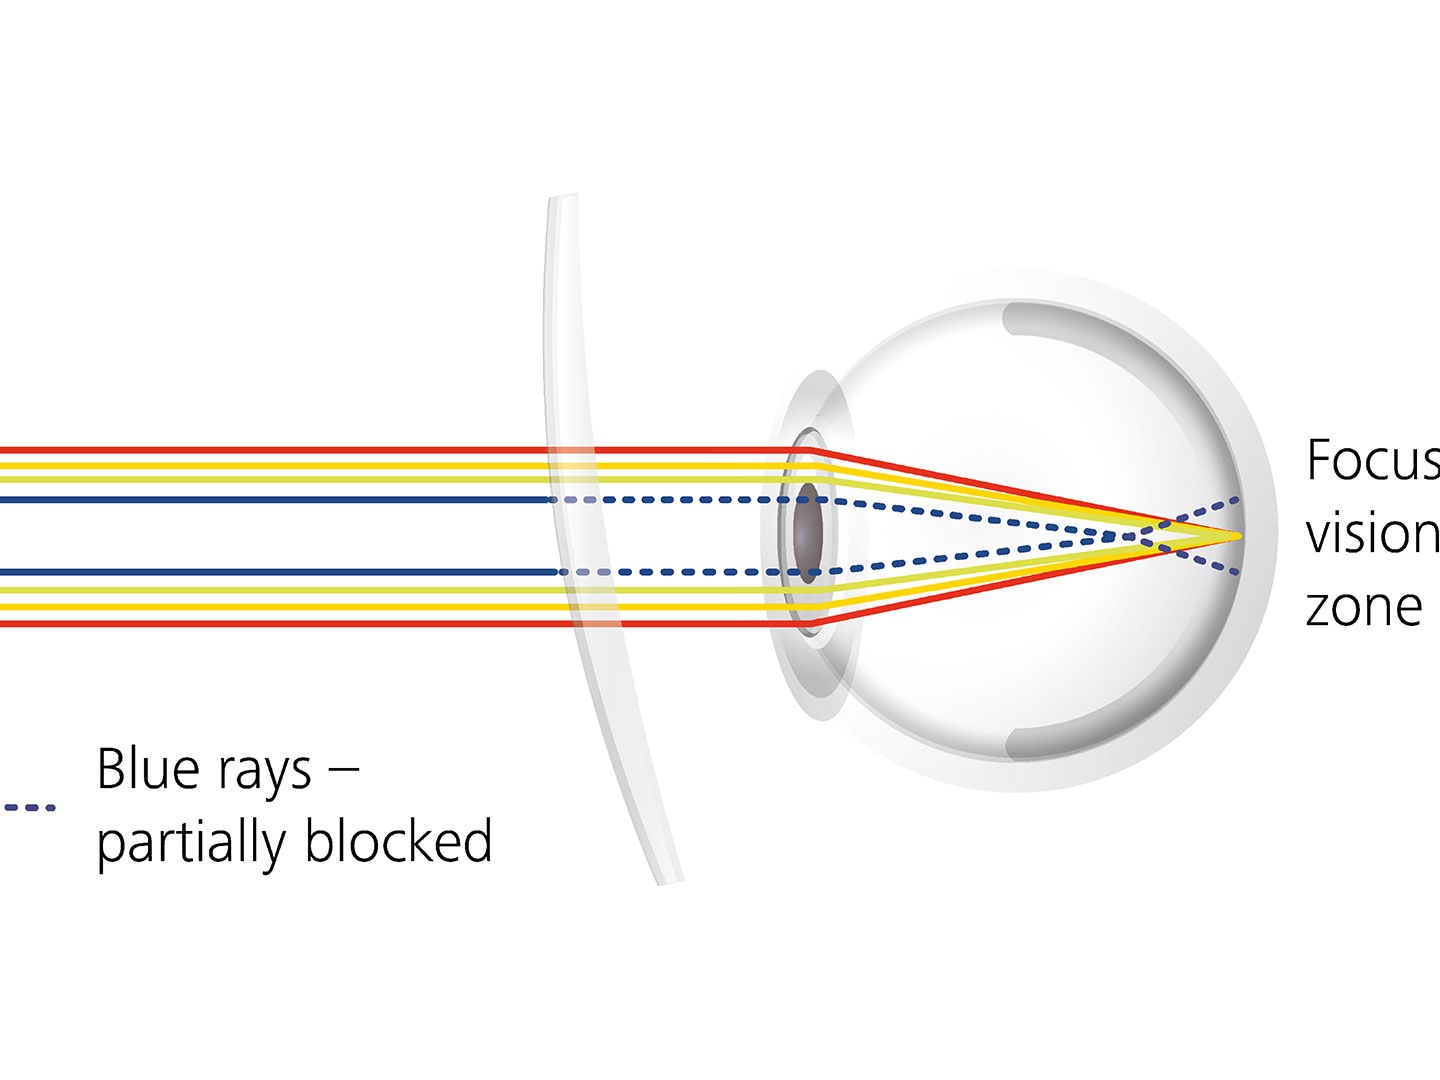 Illustration af hvordan brilleglas-coating kan reducere blænding ved delvist at blokere for blåt lys 